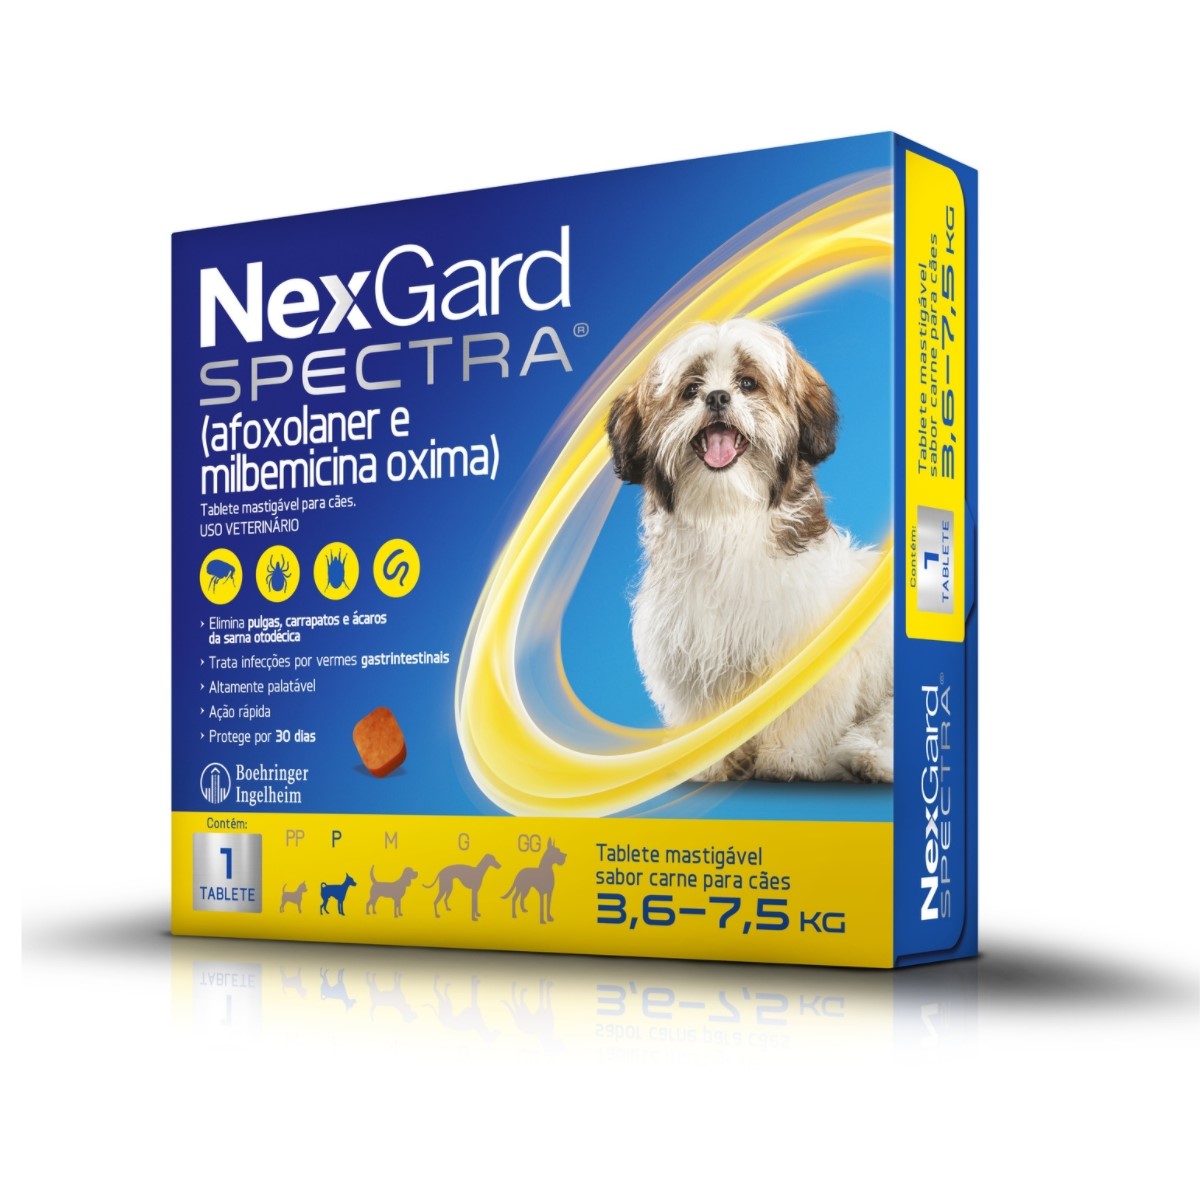 NexGard Spectra Antipulgas e Carrapatos para Caes de 3,6 a 7,5kg S